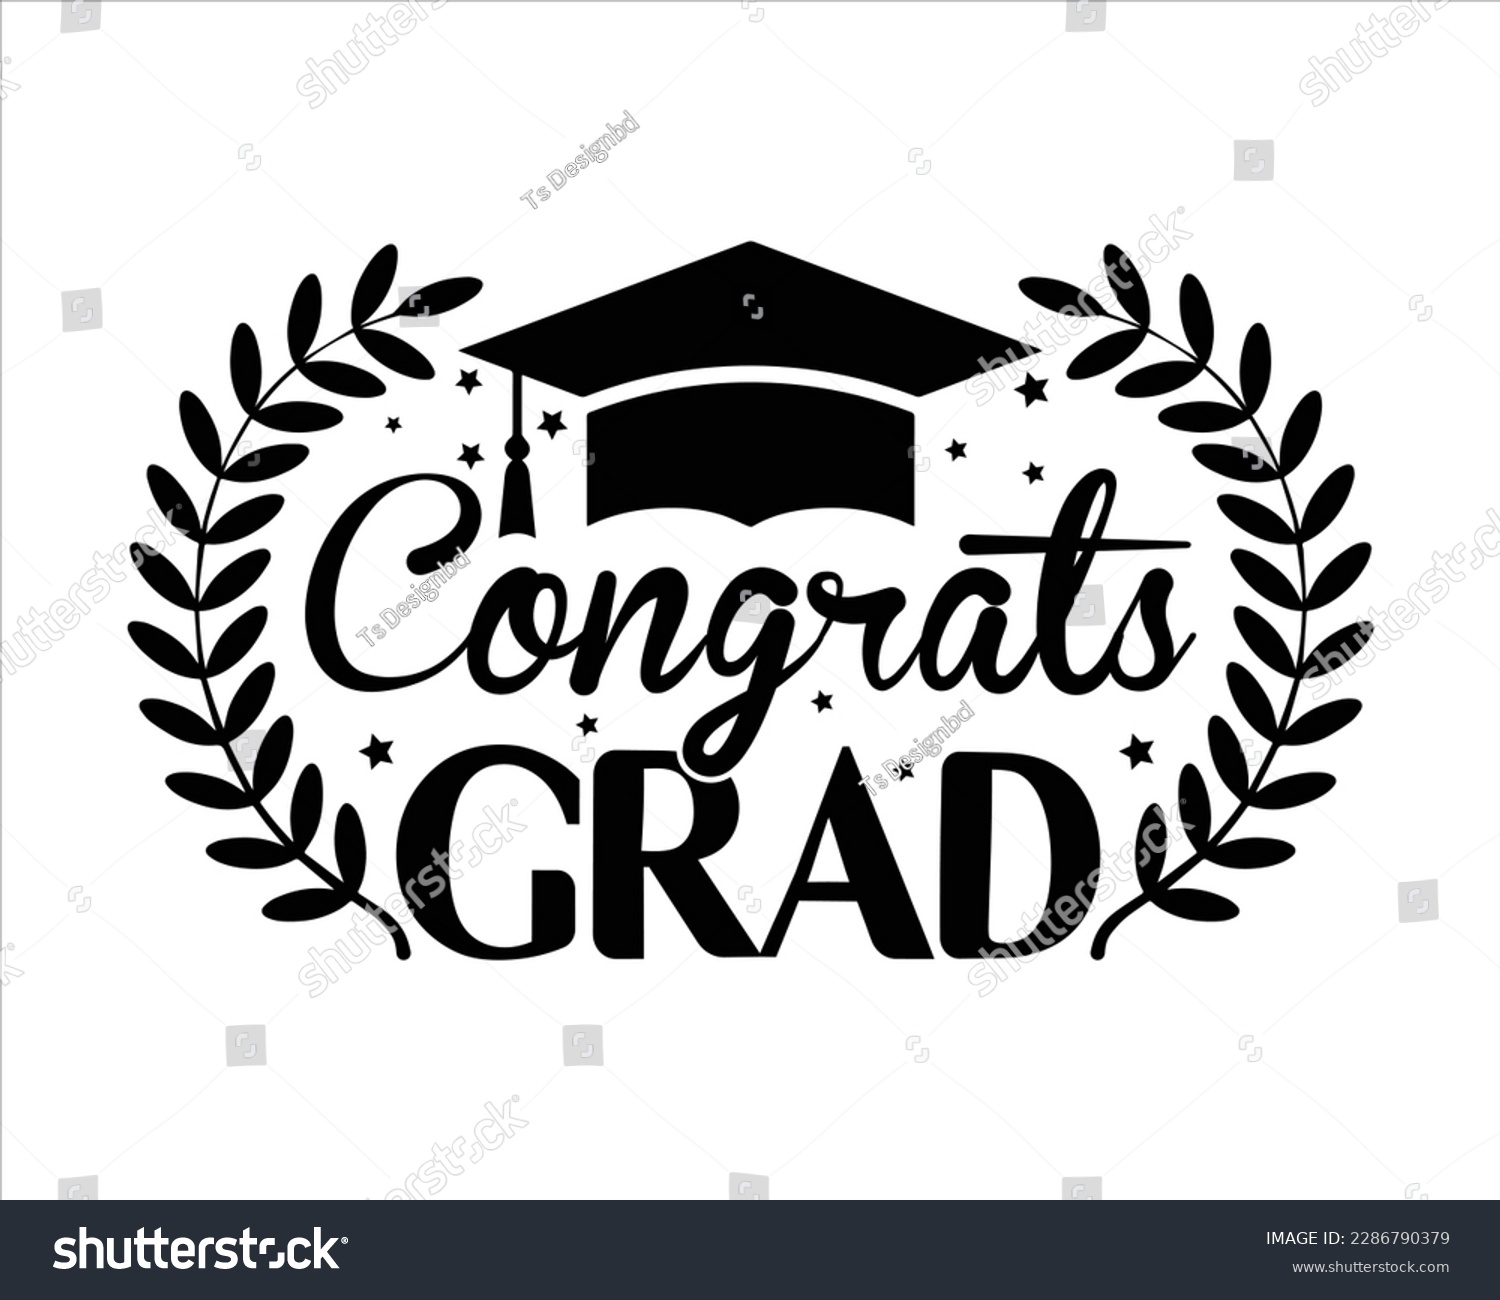 SVG of Congrats Grad Svg design,Graduation 2023 SVG,congratulations school symbols,Student graduate badges,Senior Graduation svg, College graduation quotes svg